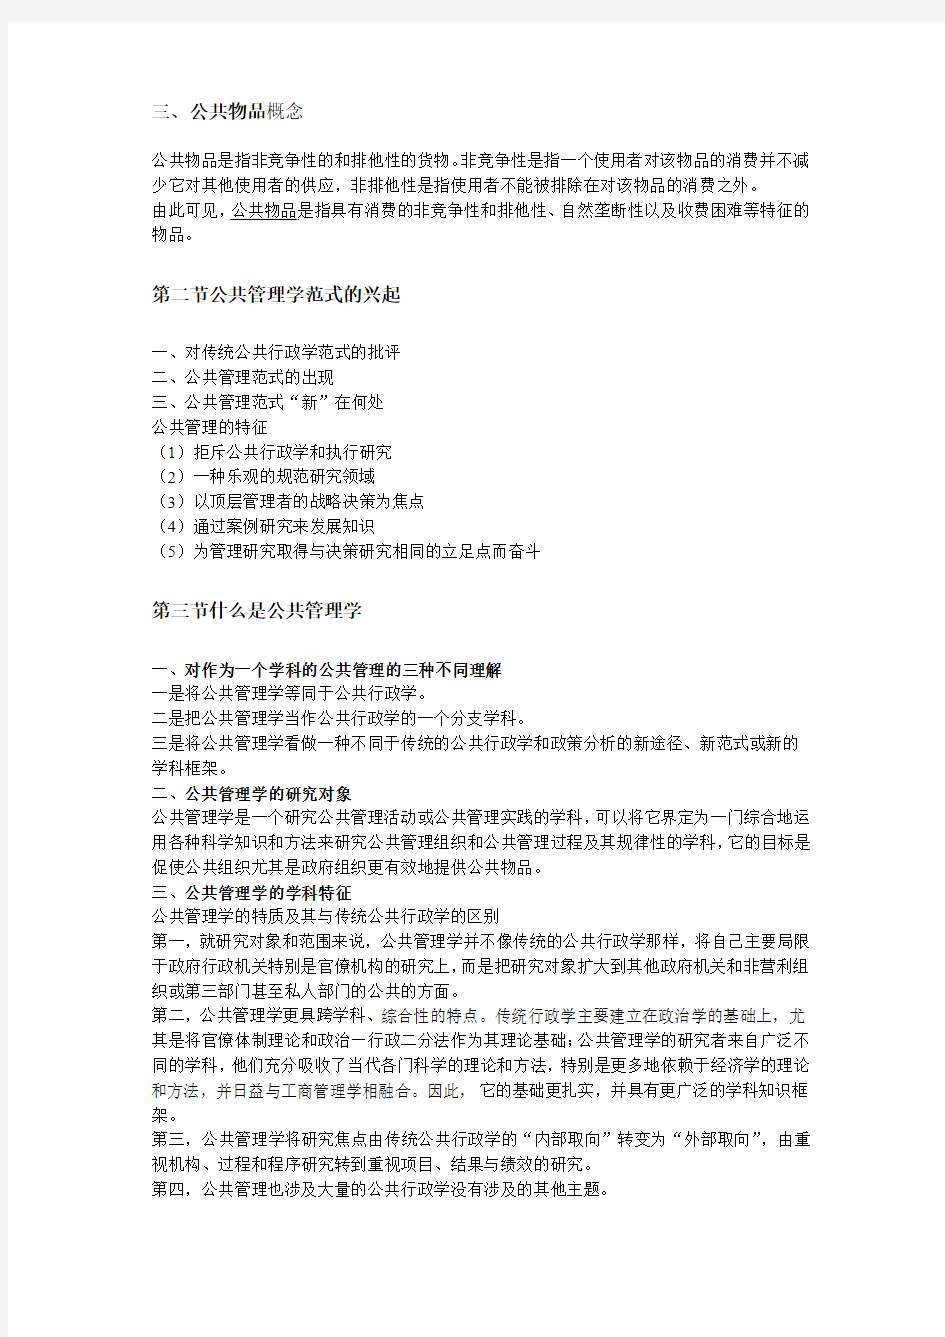 湘潭大学行政管理专业考研书目《公共管理学》笔记